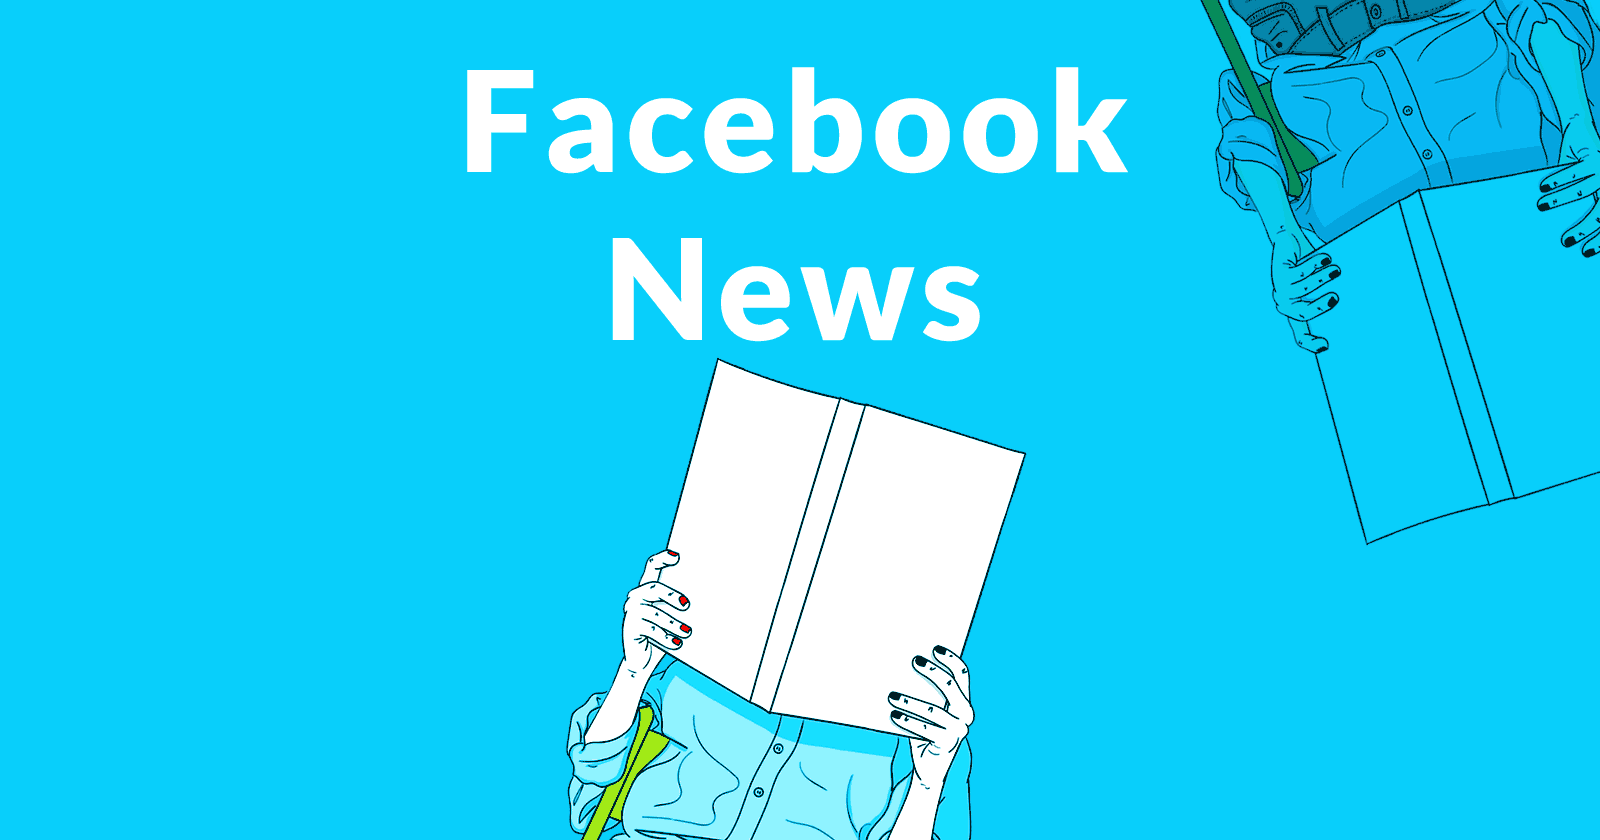 Facebook News